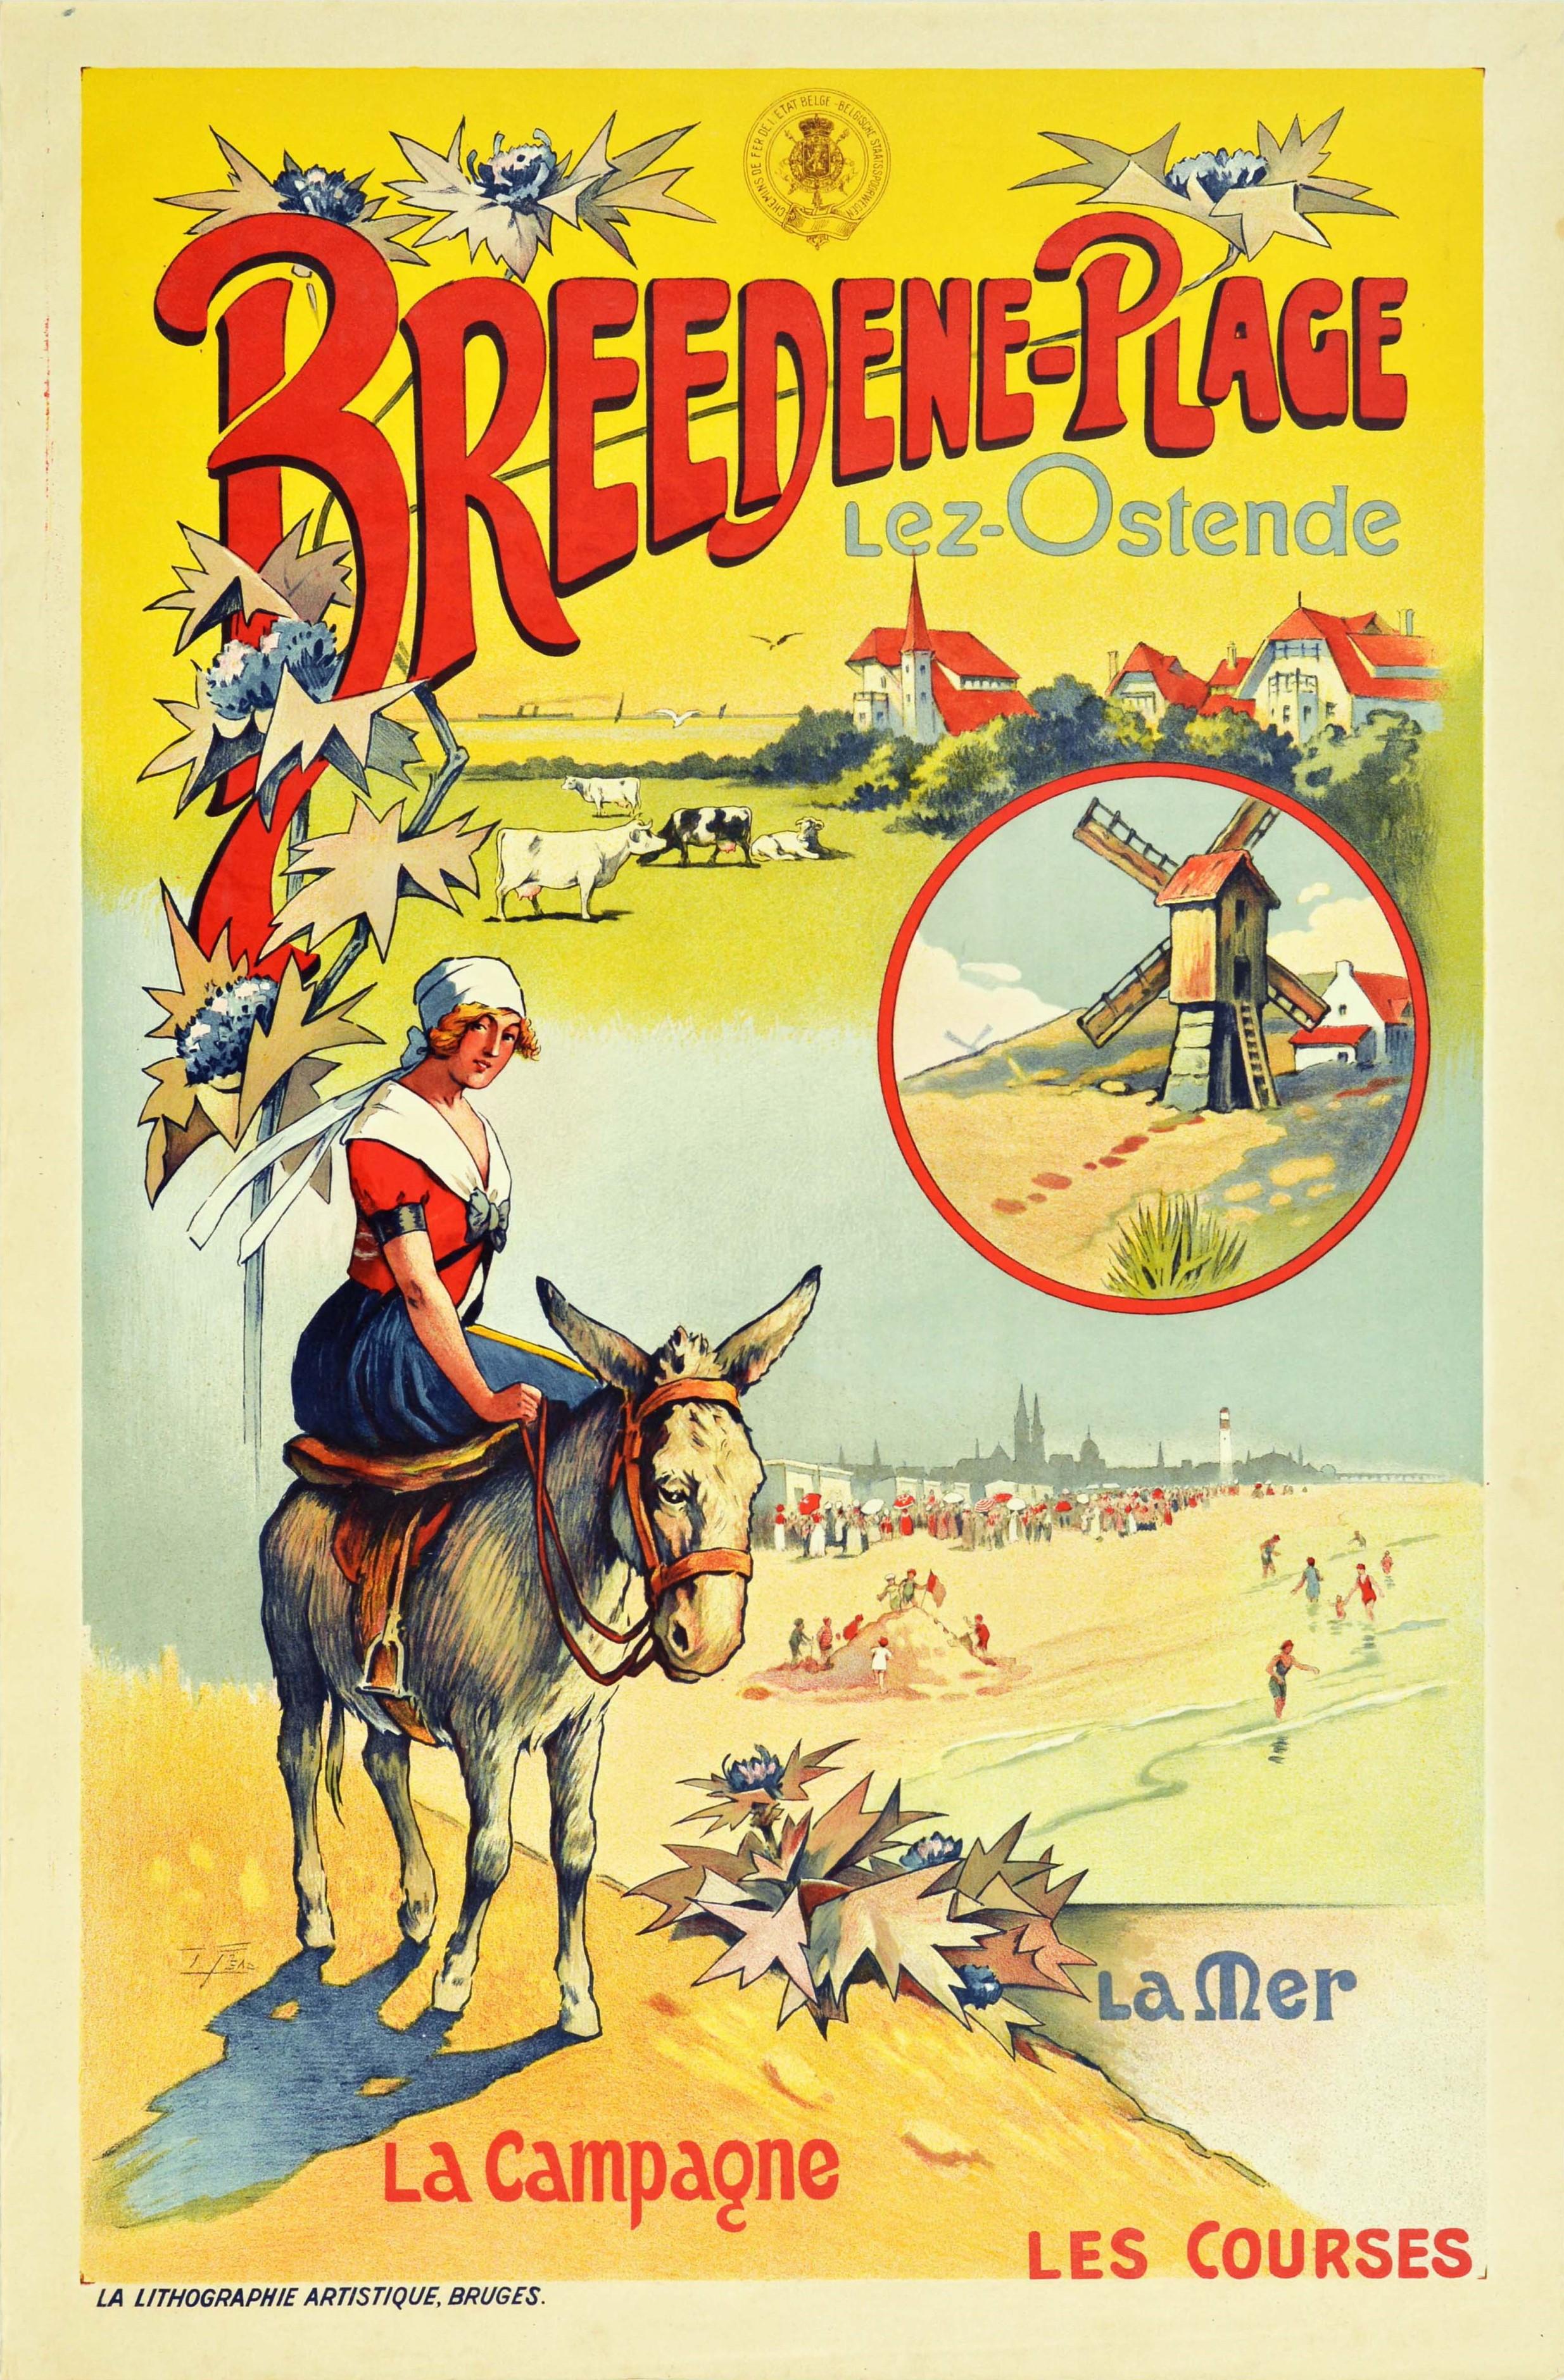 Unknown Print - Original Antique Railway Travel Poster Breedene Plage Lez Ostende Beach Belgium 